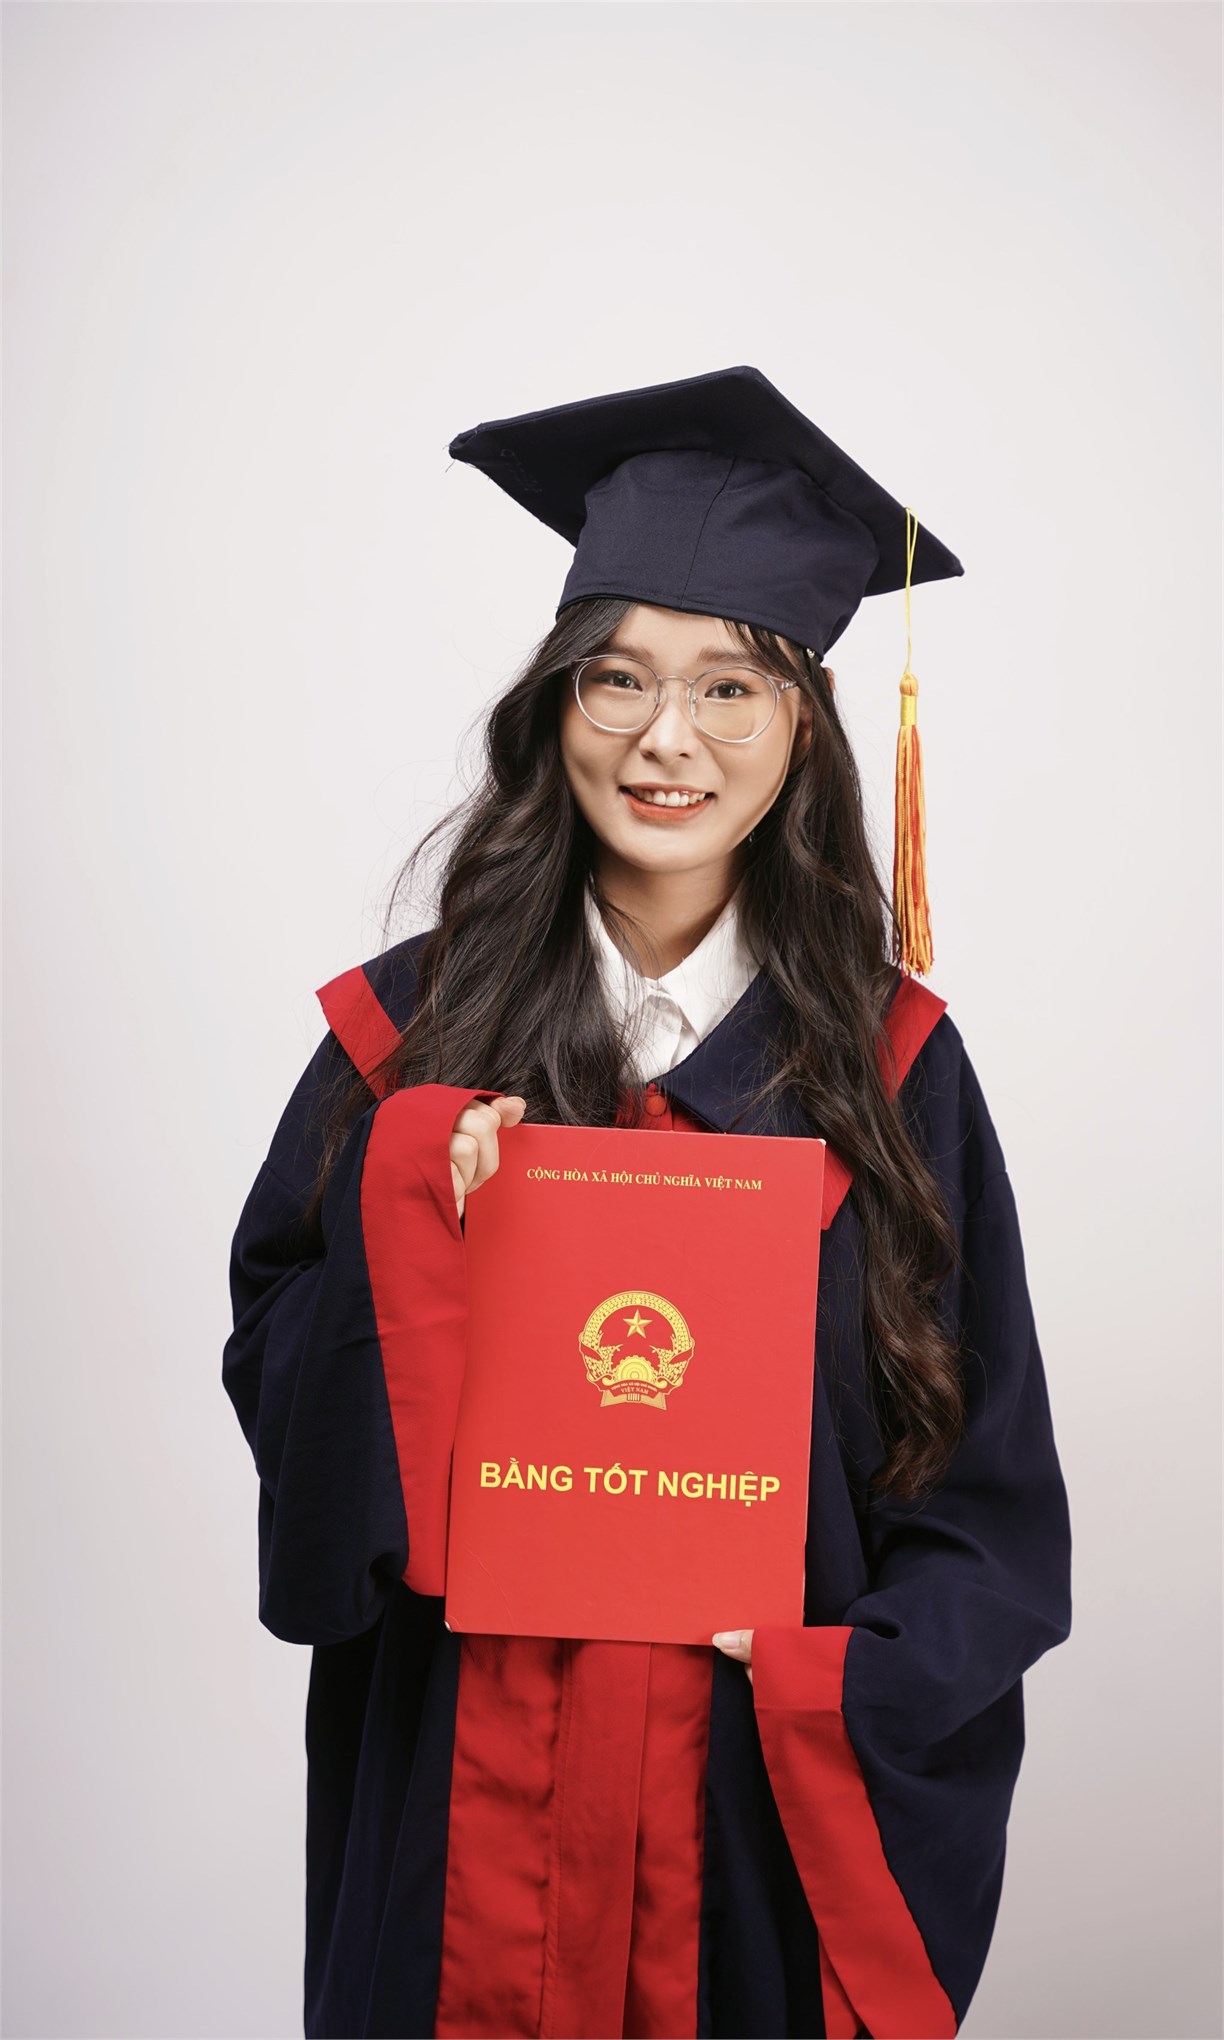 Nữ sinh Chương trình LKĐT Ngành Ngôn ngữ Trung Quốc xuất sắc nhận học bổng 1 tỉ đồng